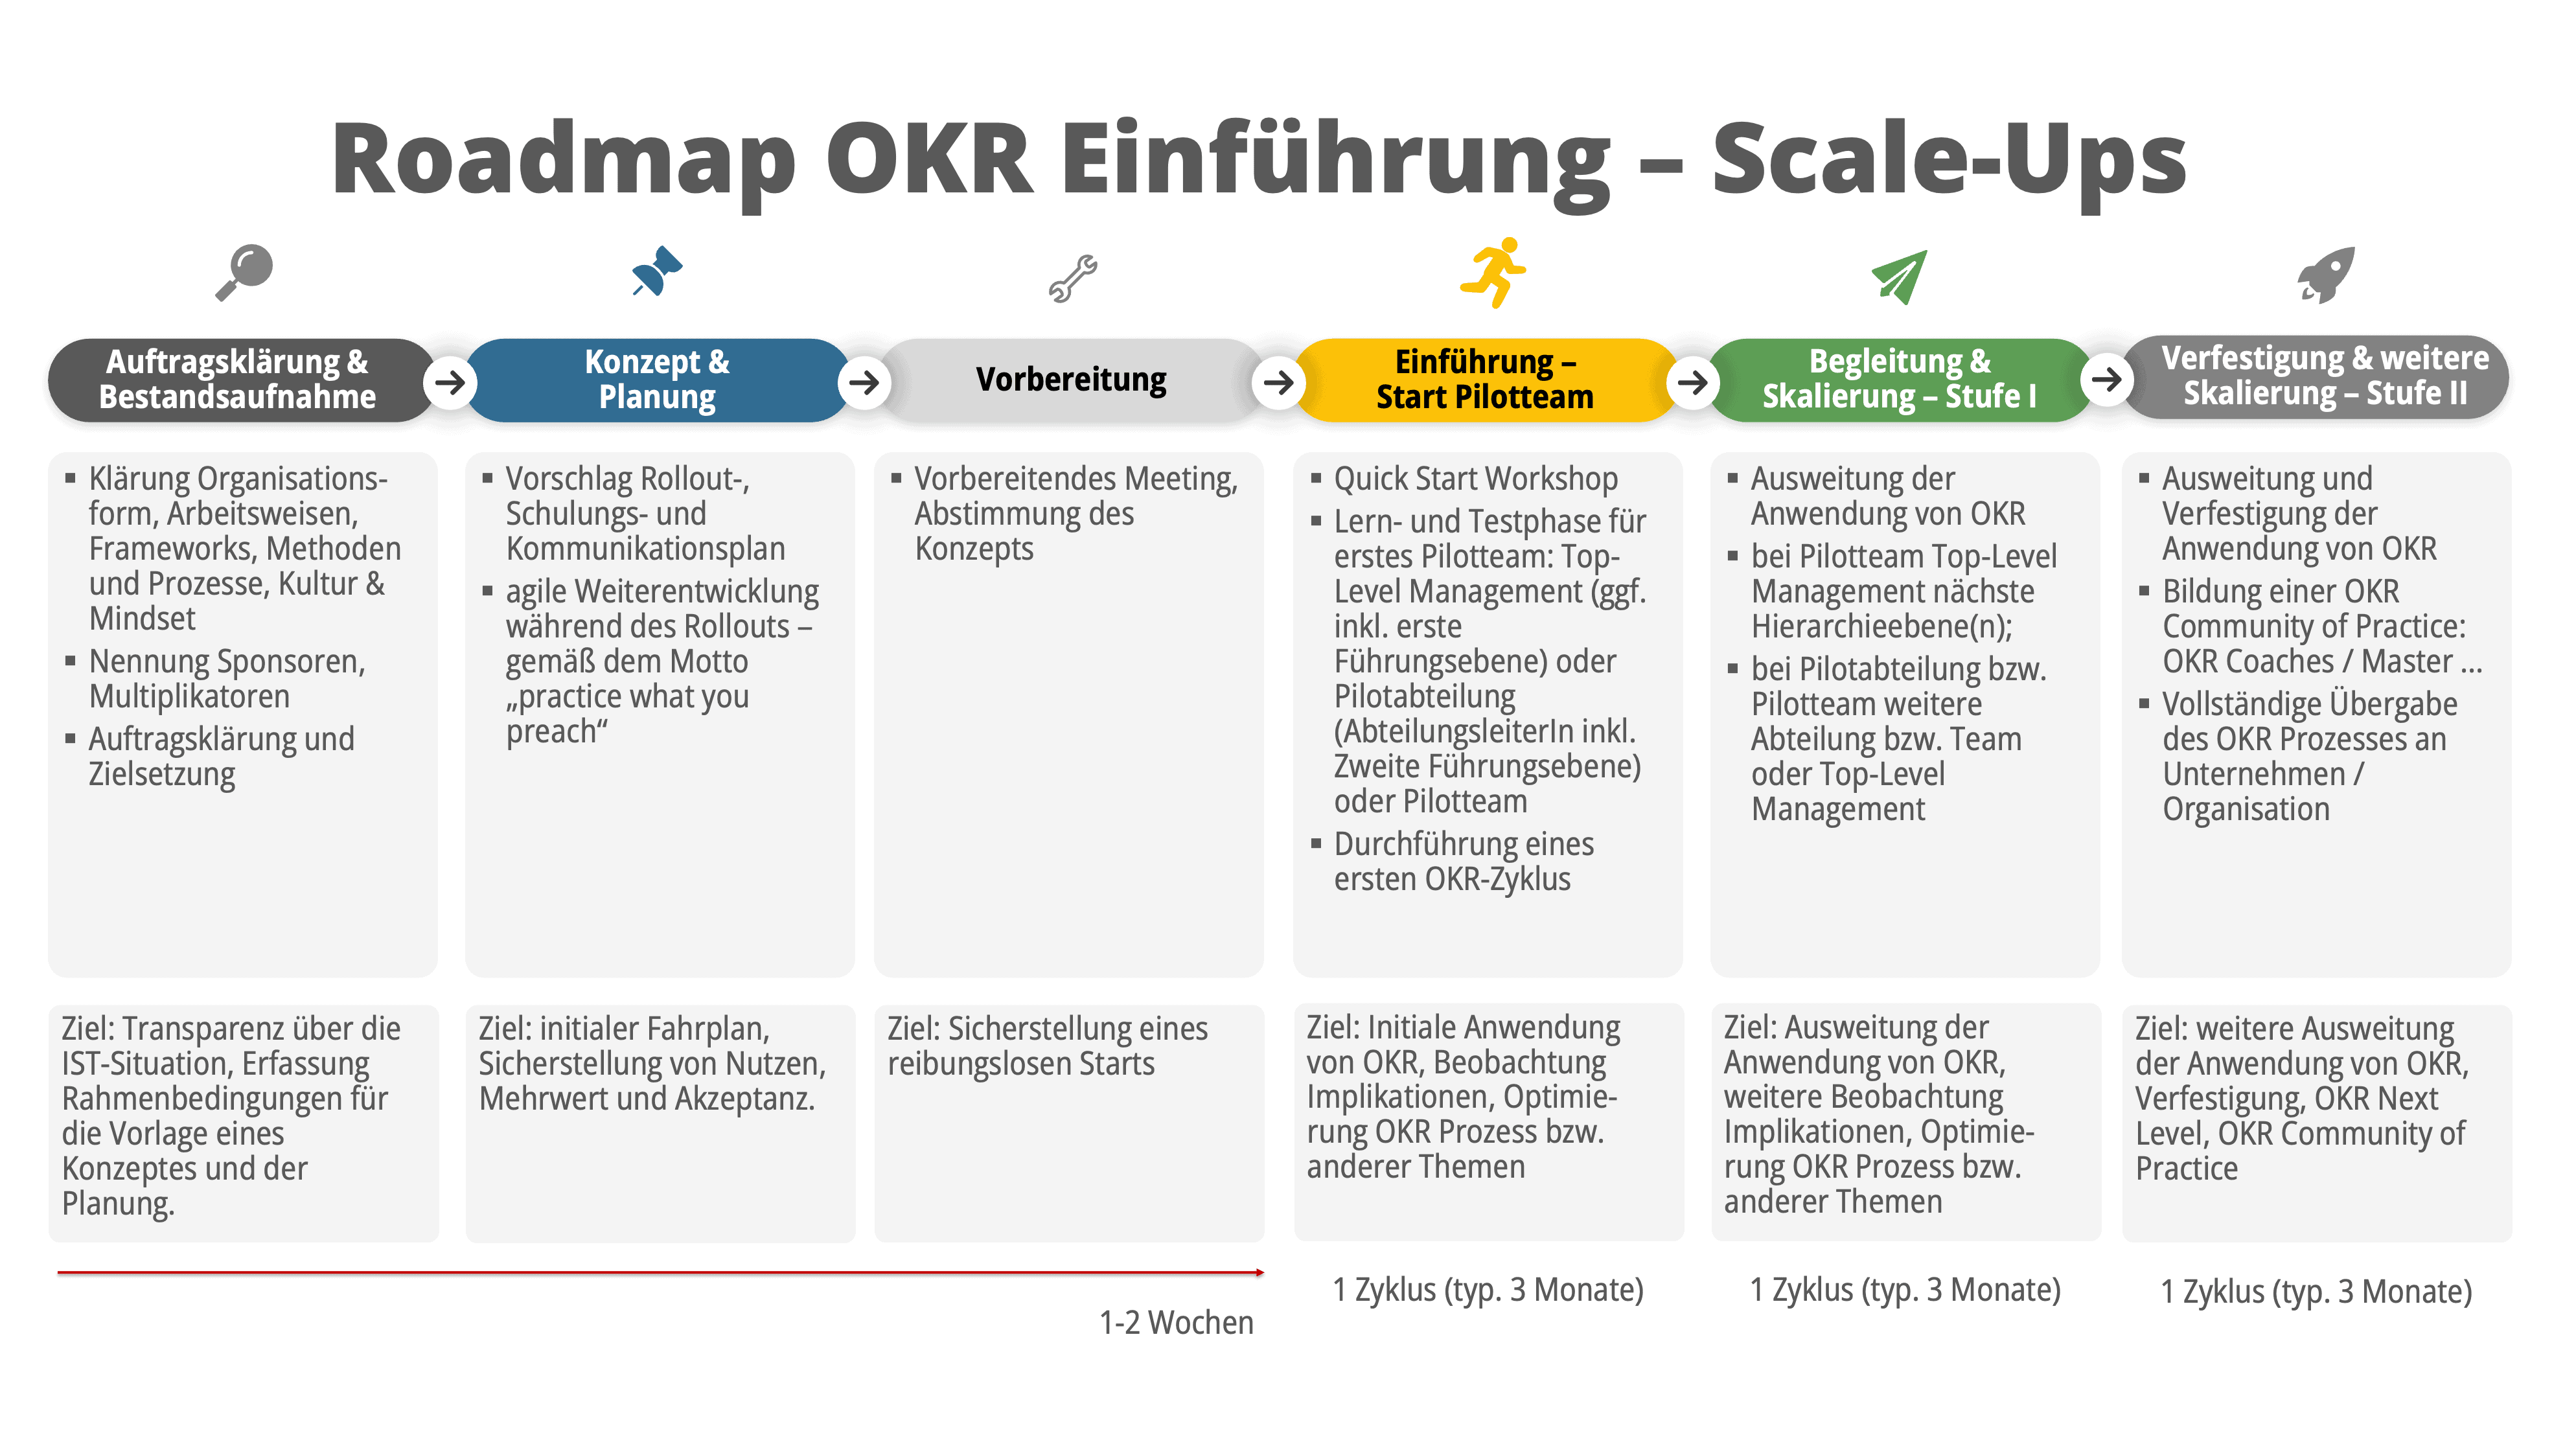 OKR Einführung Scale-ups